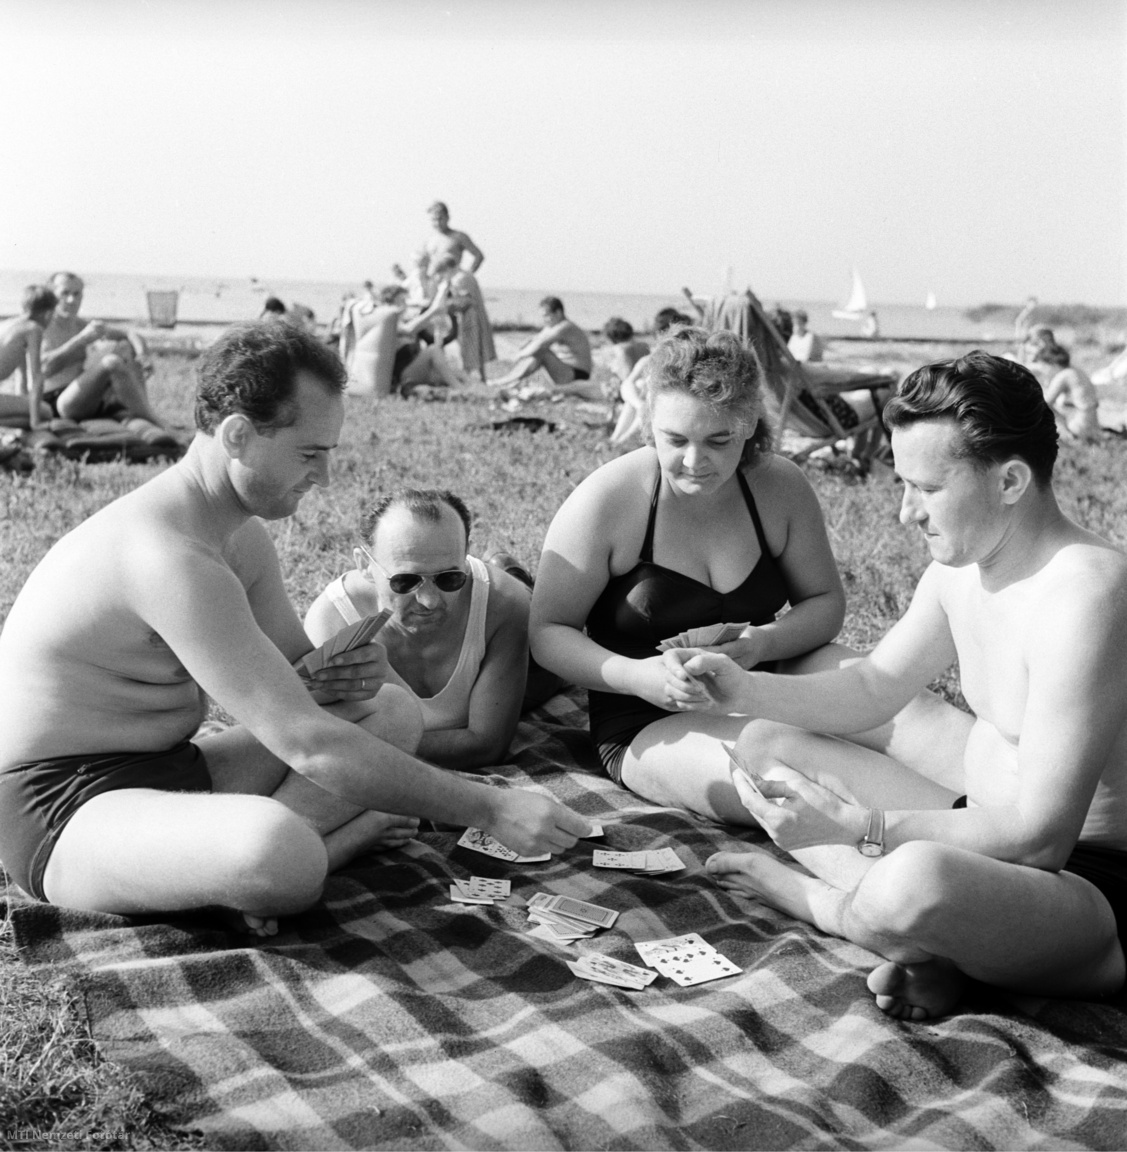 Magyarország, 1962. augusztus 4. A Helvéciai Állami Gazdaság dolgozói üdülnek, kártyázva pihennek a Balaton partján. A felvétel készítésének pontos helye ismeretlen.